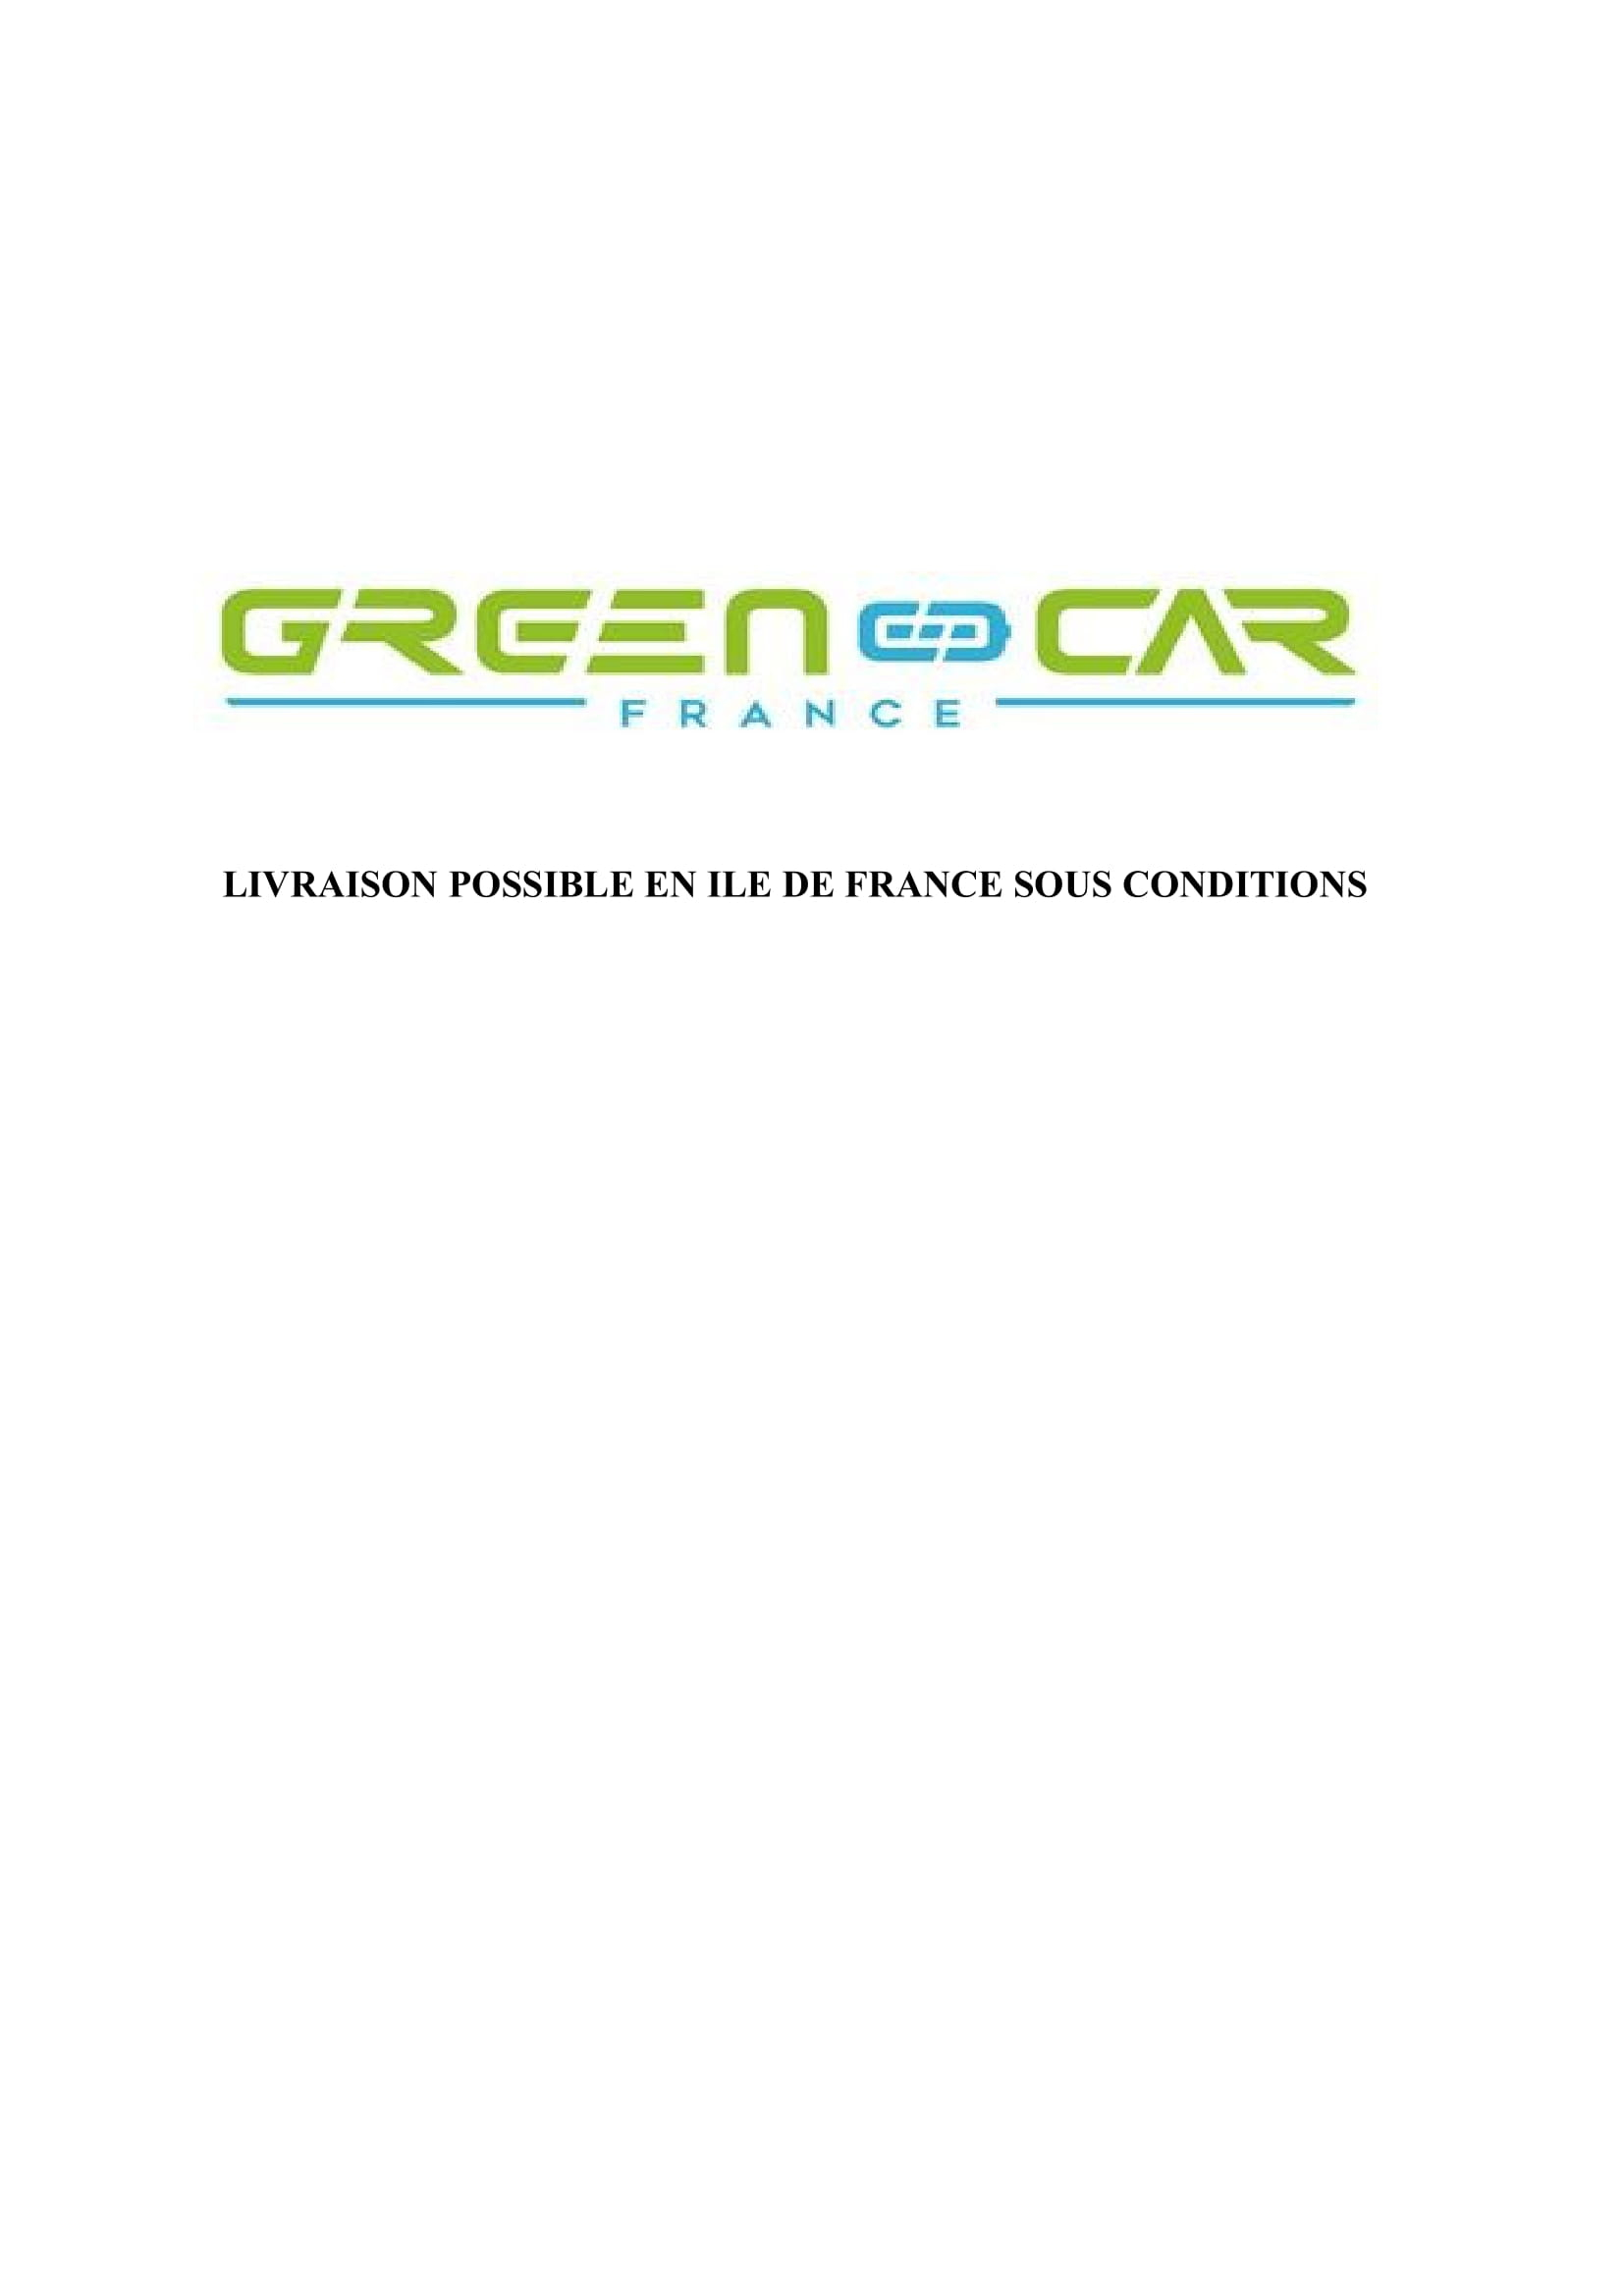 Slide 6 du site de Greencar France